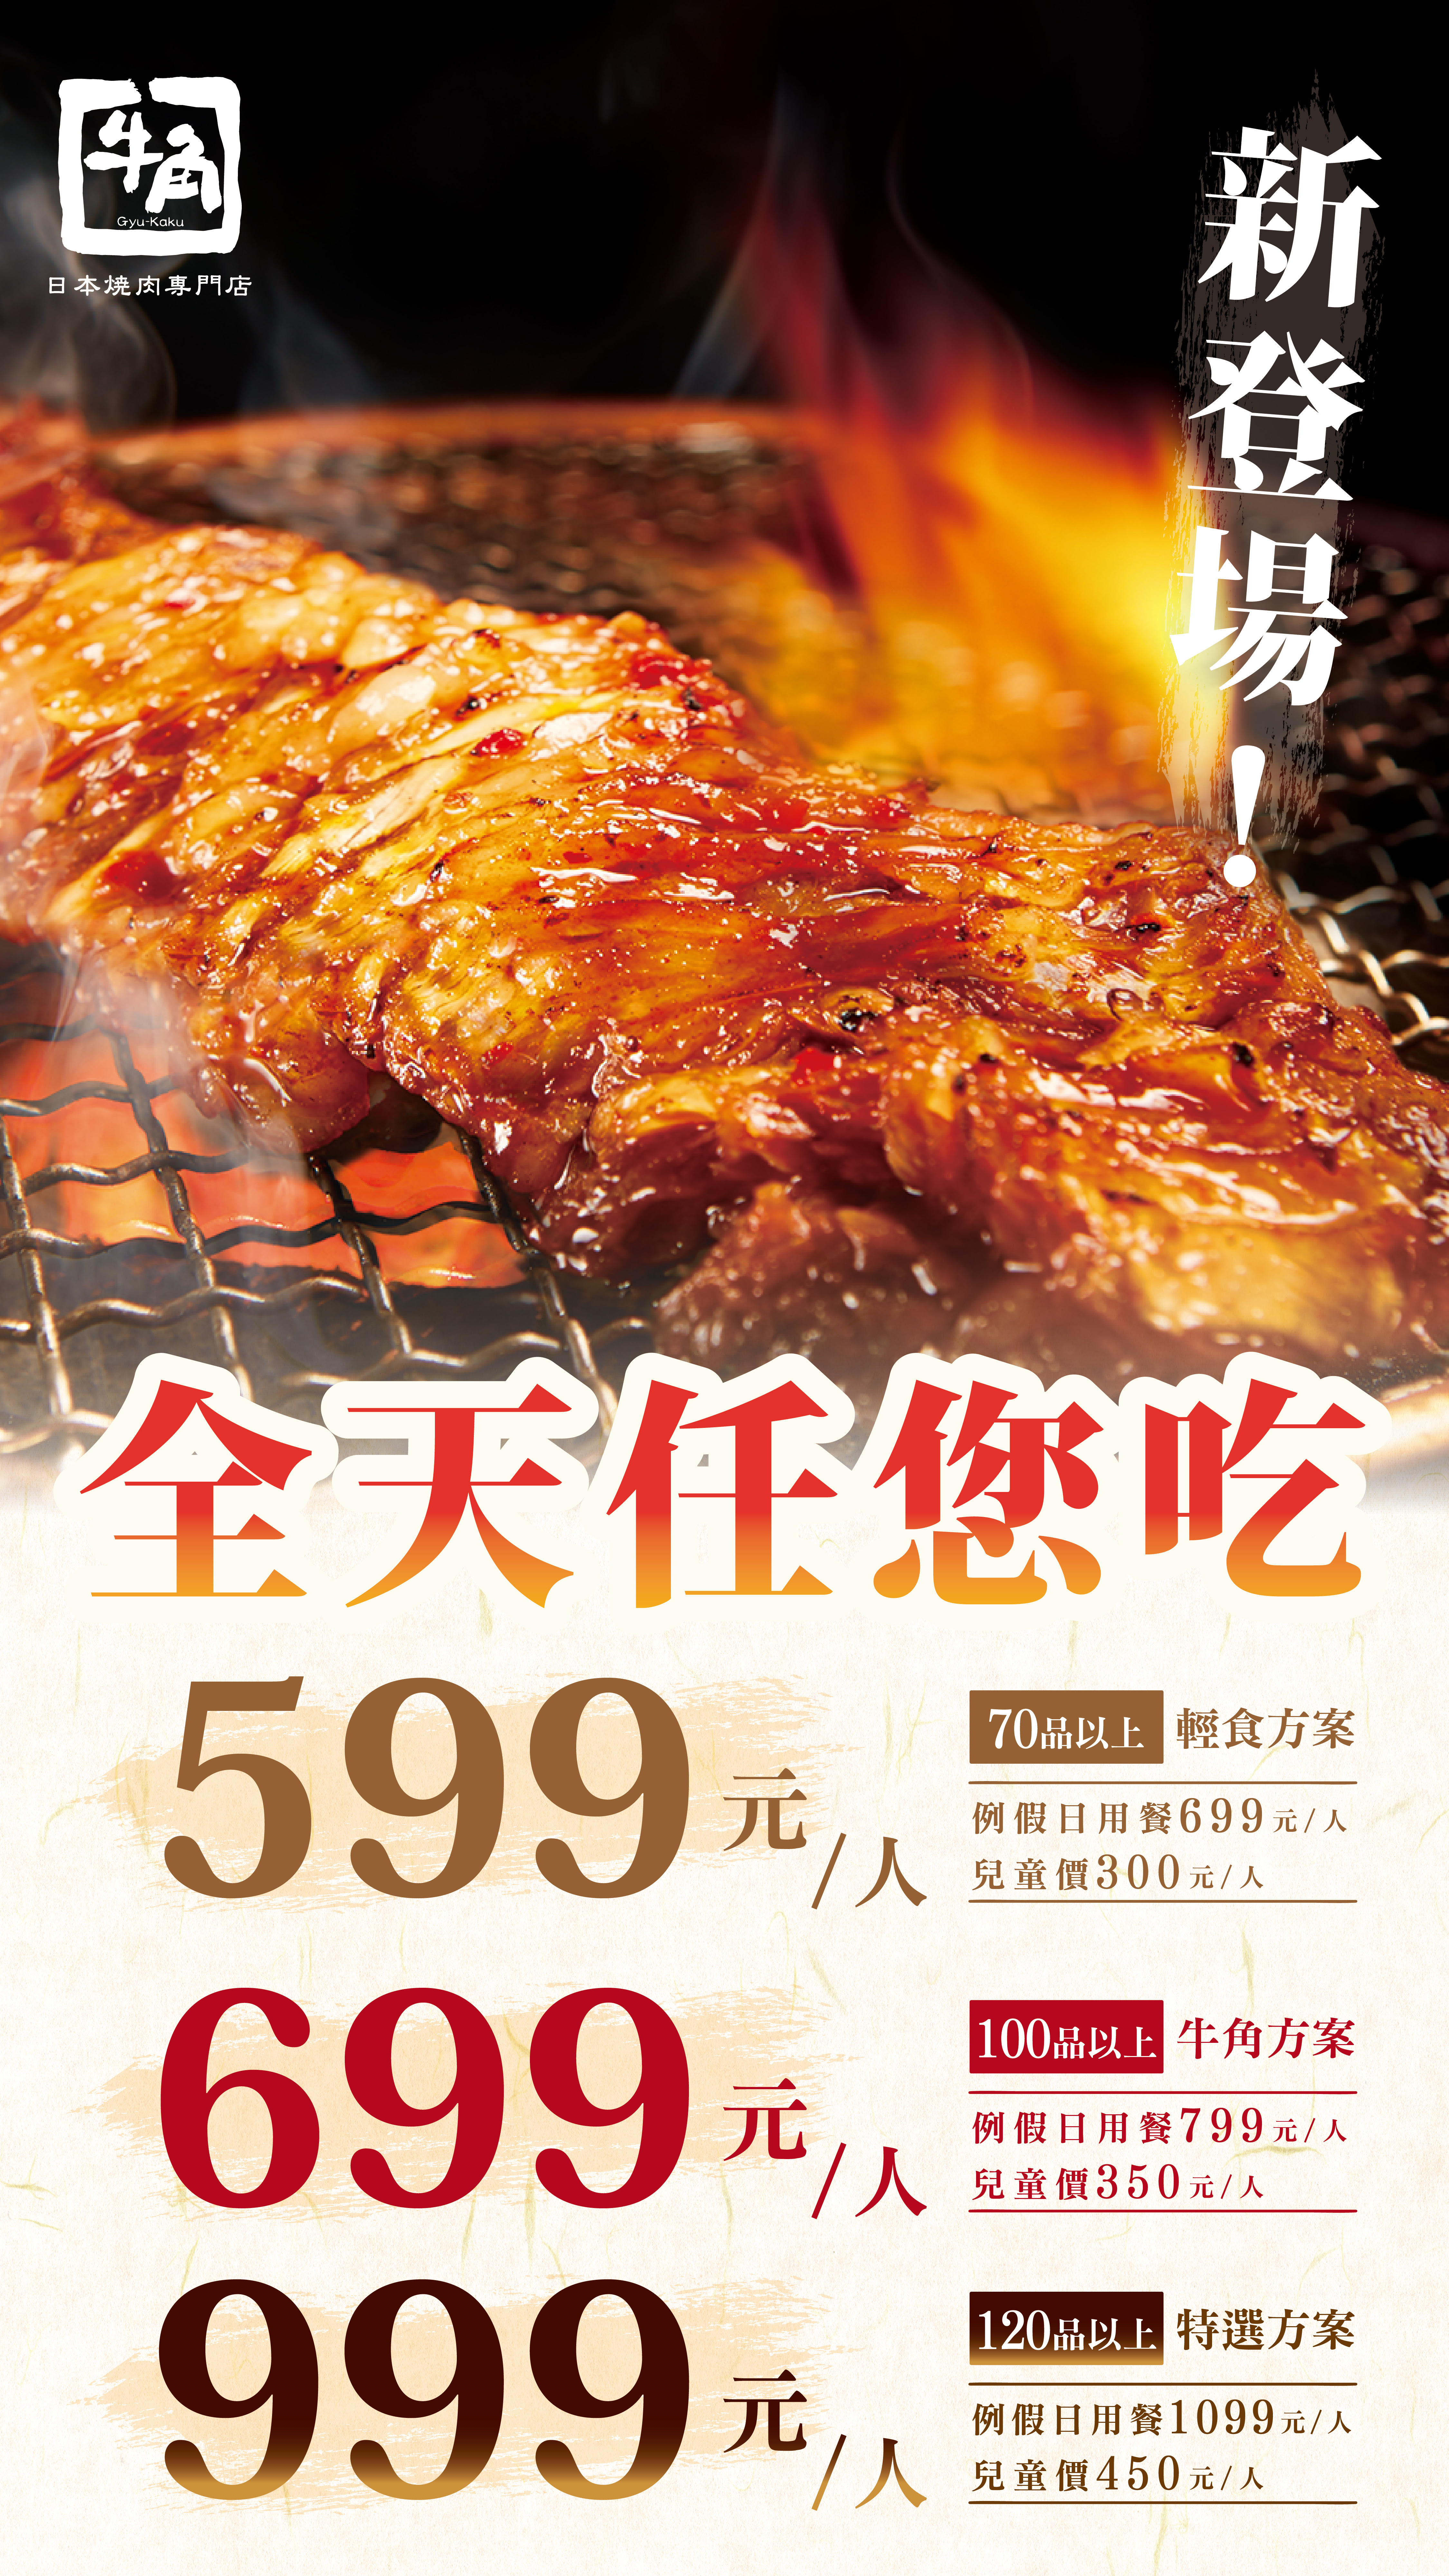 牛角日本燒肉專門店 燒肉吃到飽